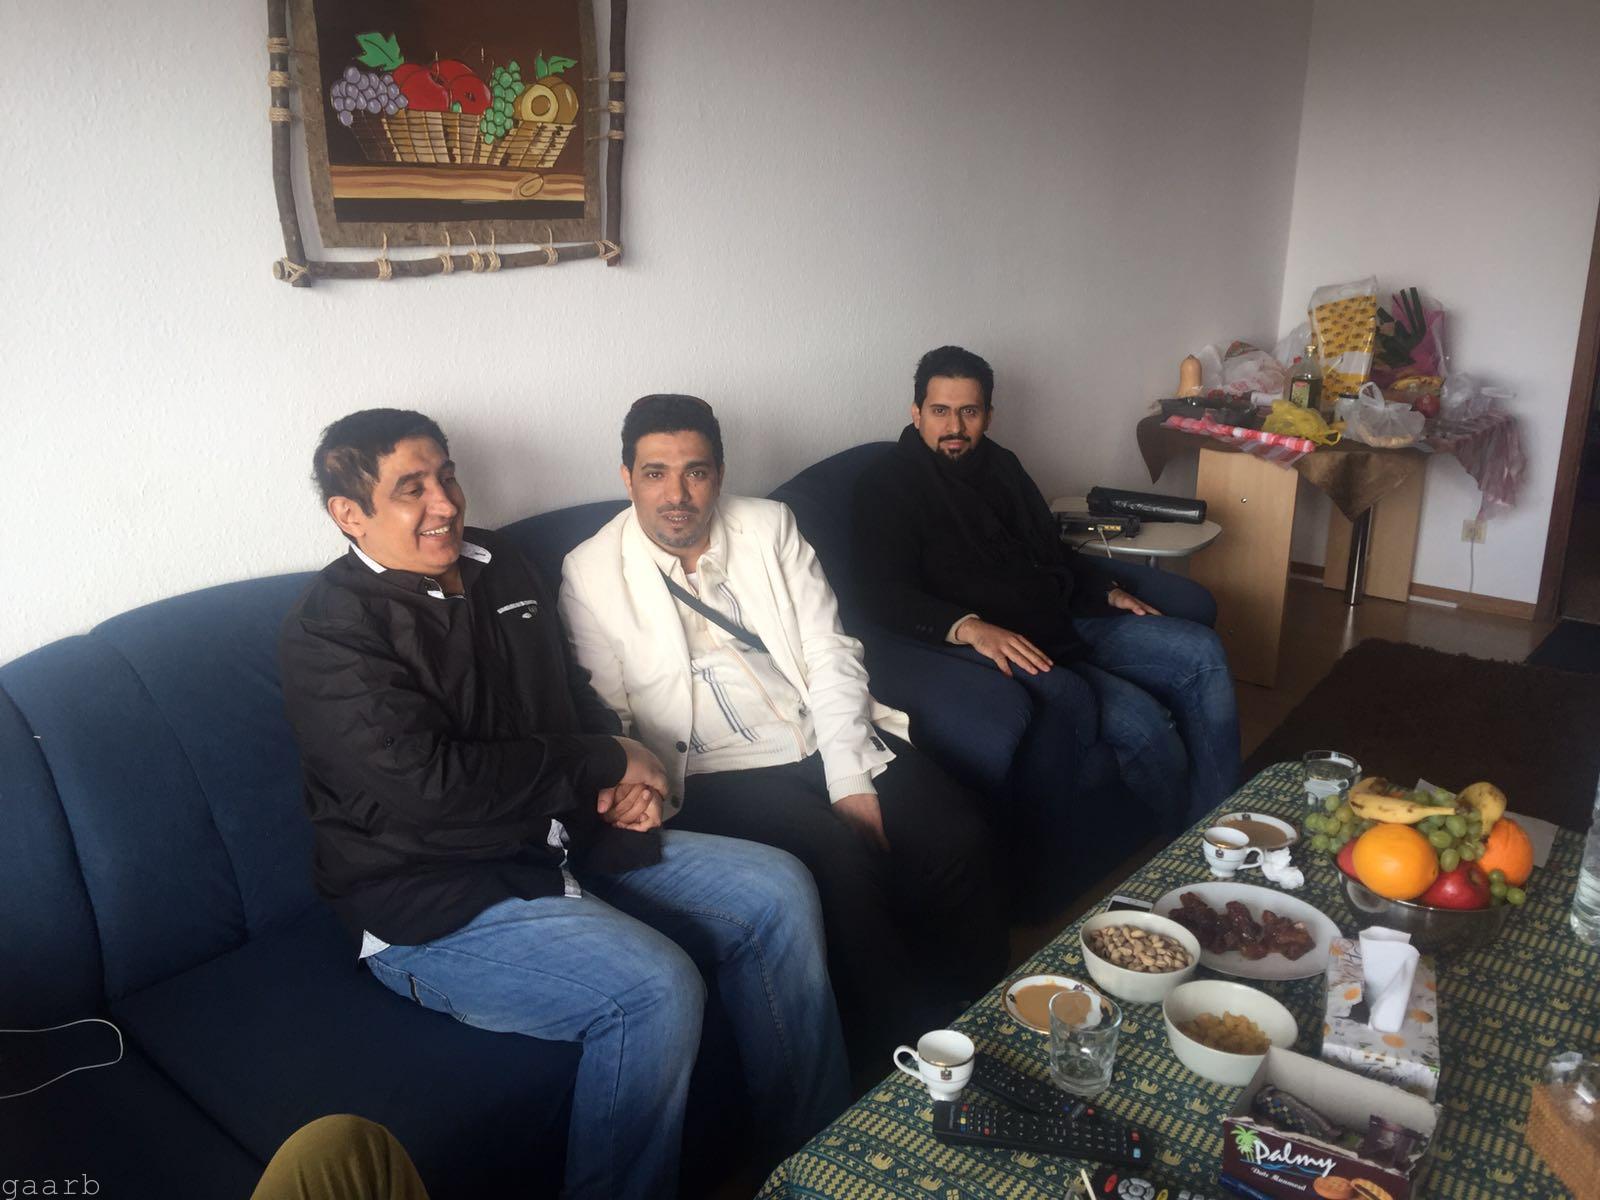 الشيخ رشيد والرائد المالكي يزورون الشاعر احمد الصغير بألمانيا